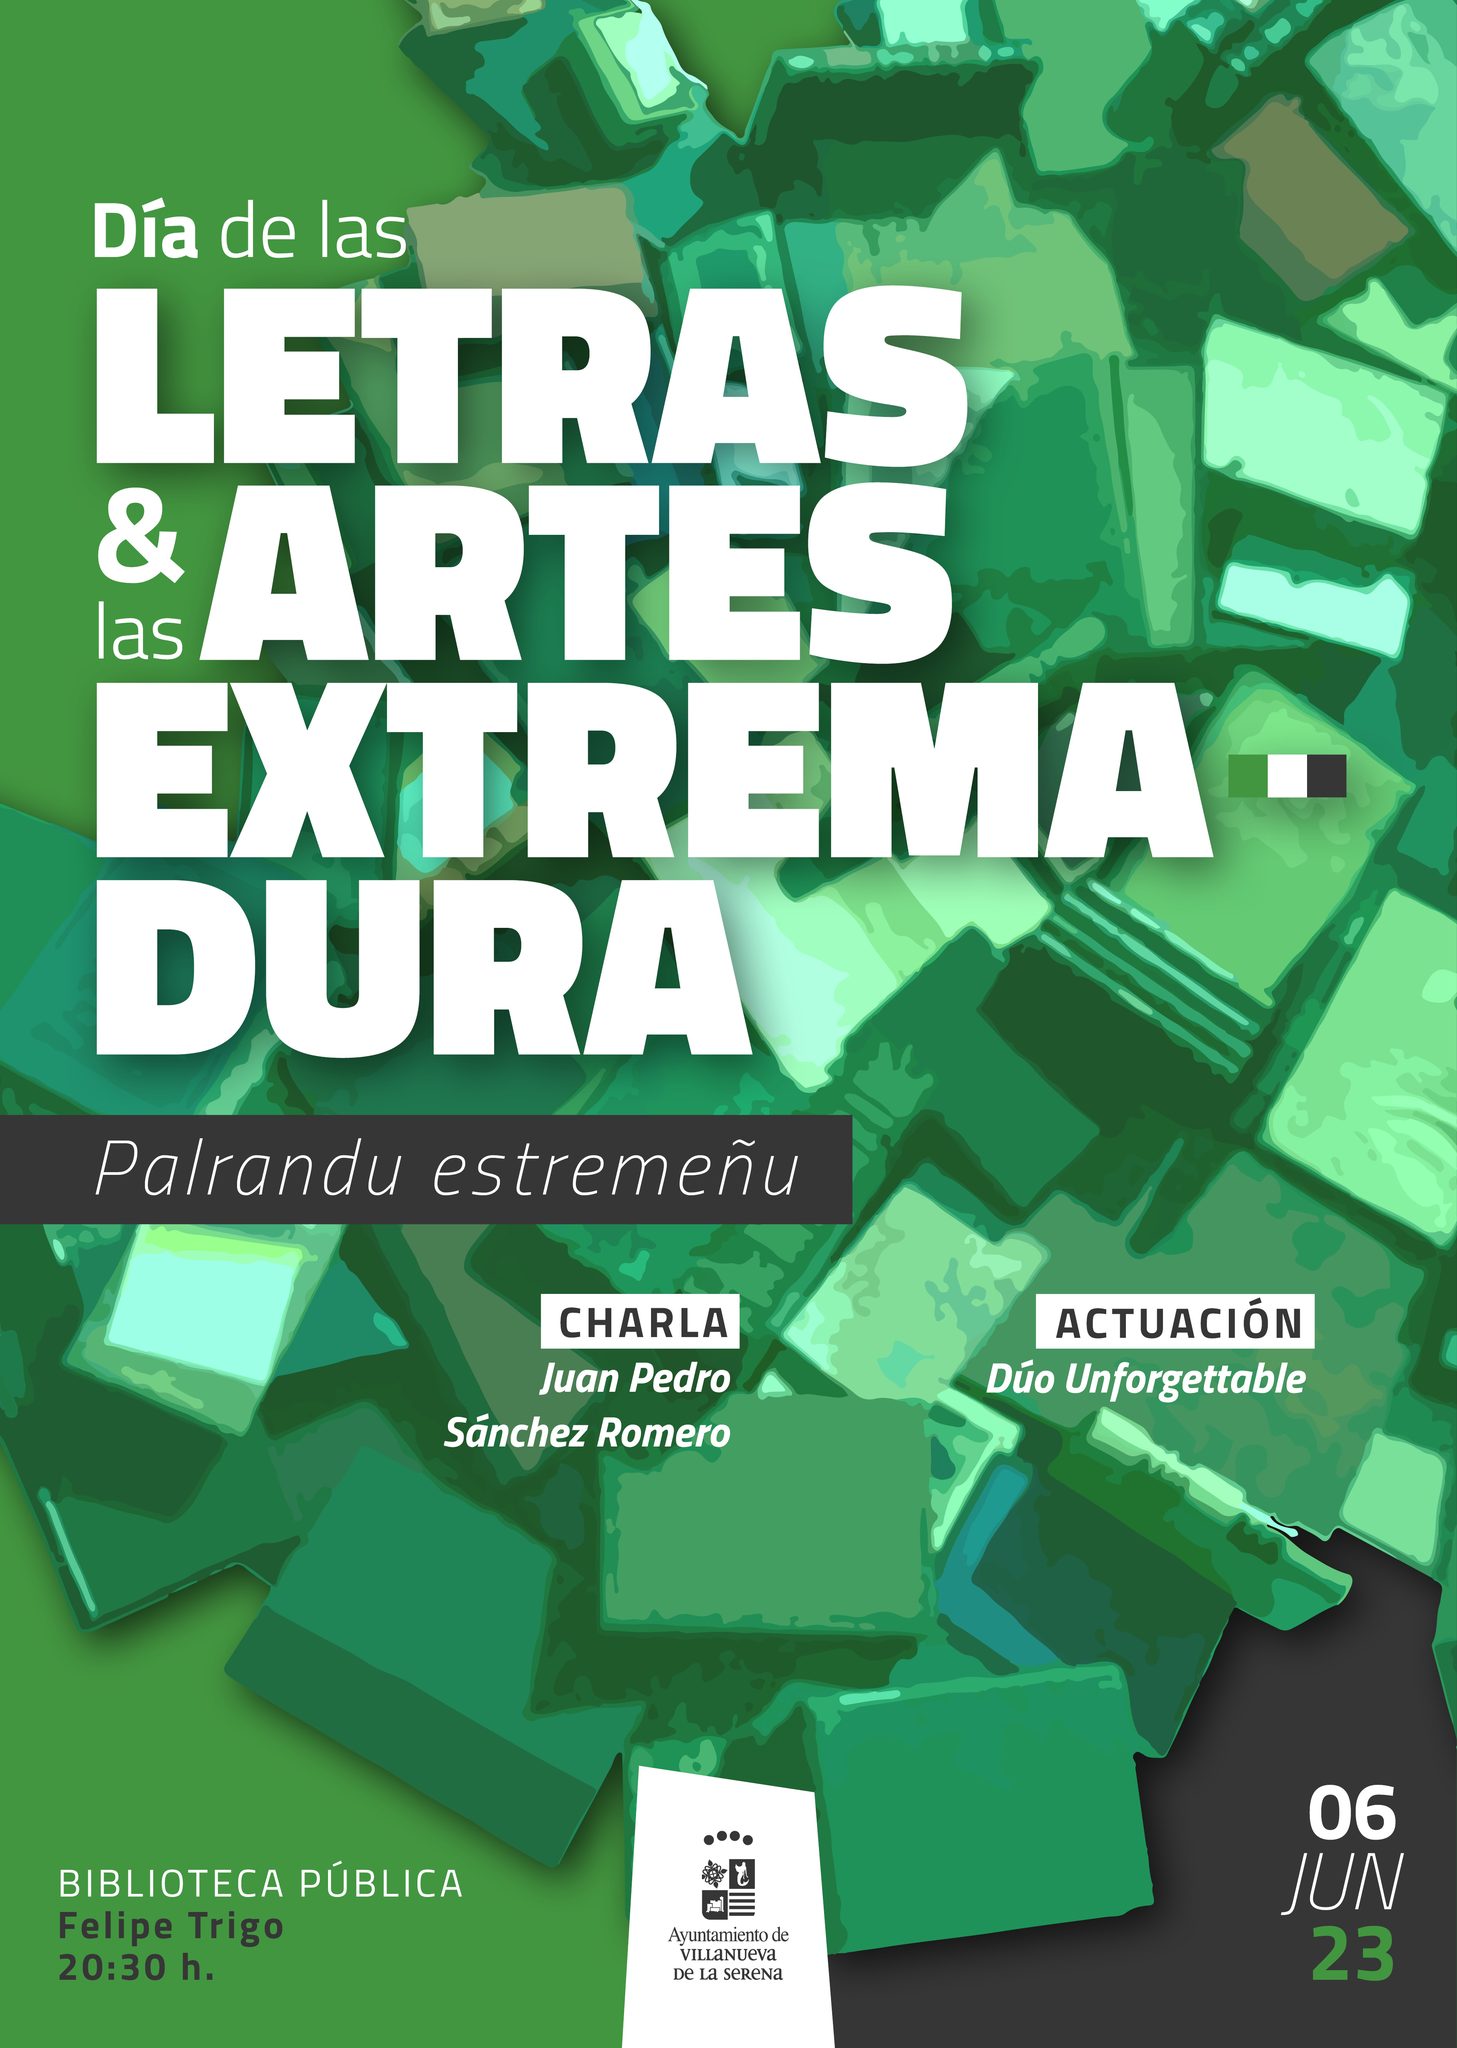 Día de las Letras & las Artes de Extremadura. Palrandu estremeñu.